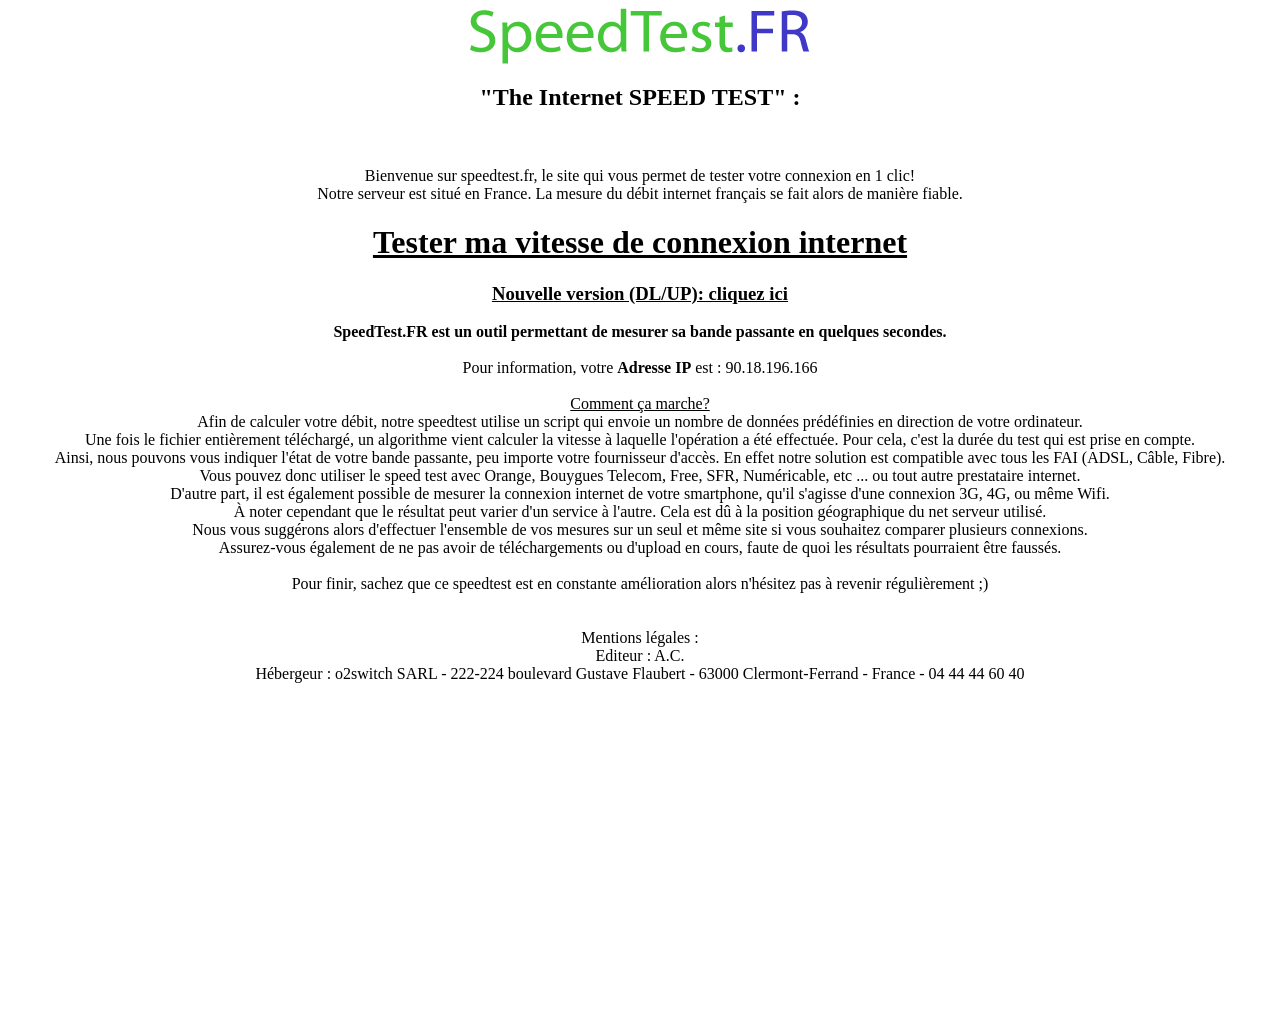 www.speedtest.fr